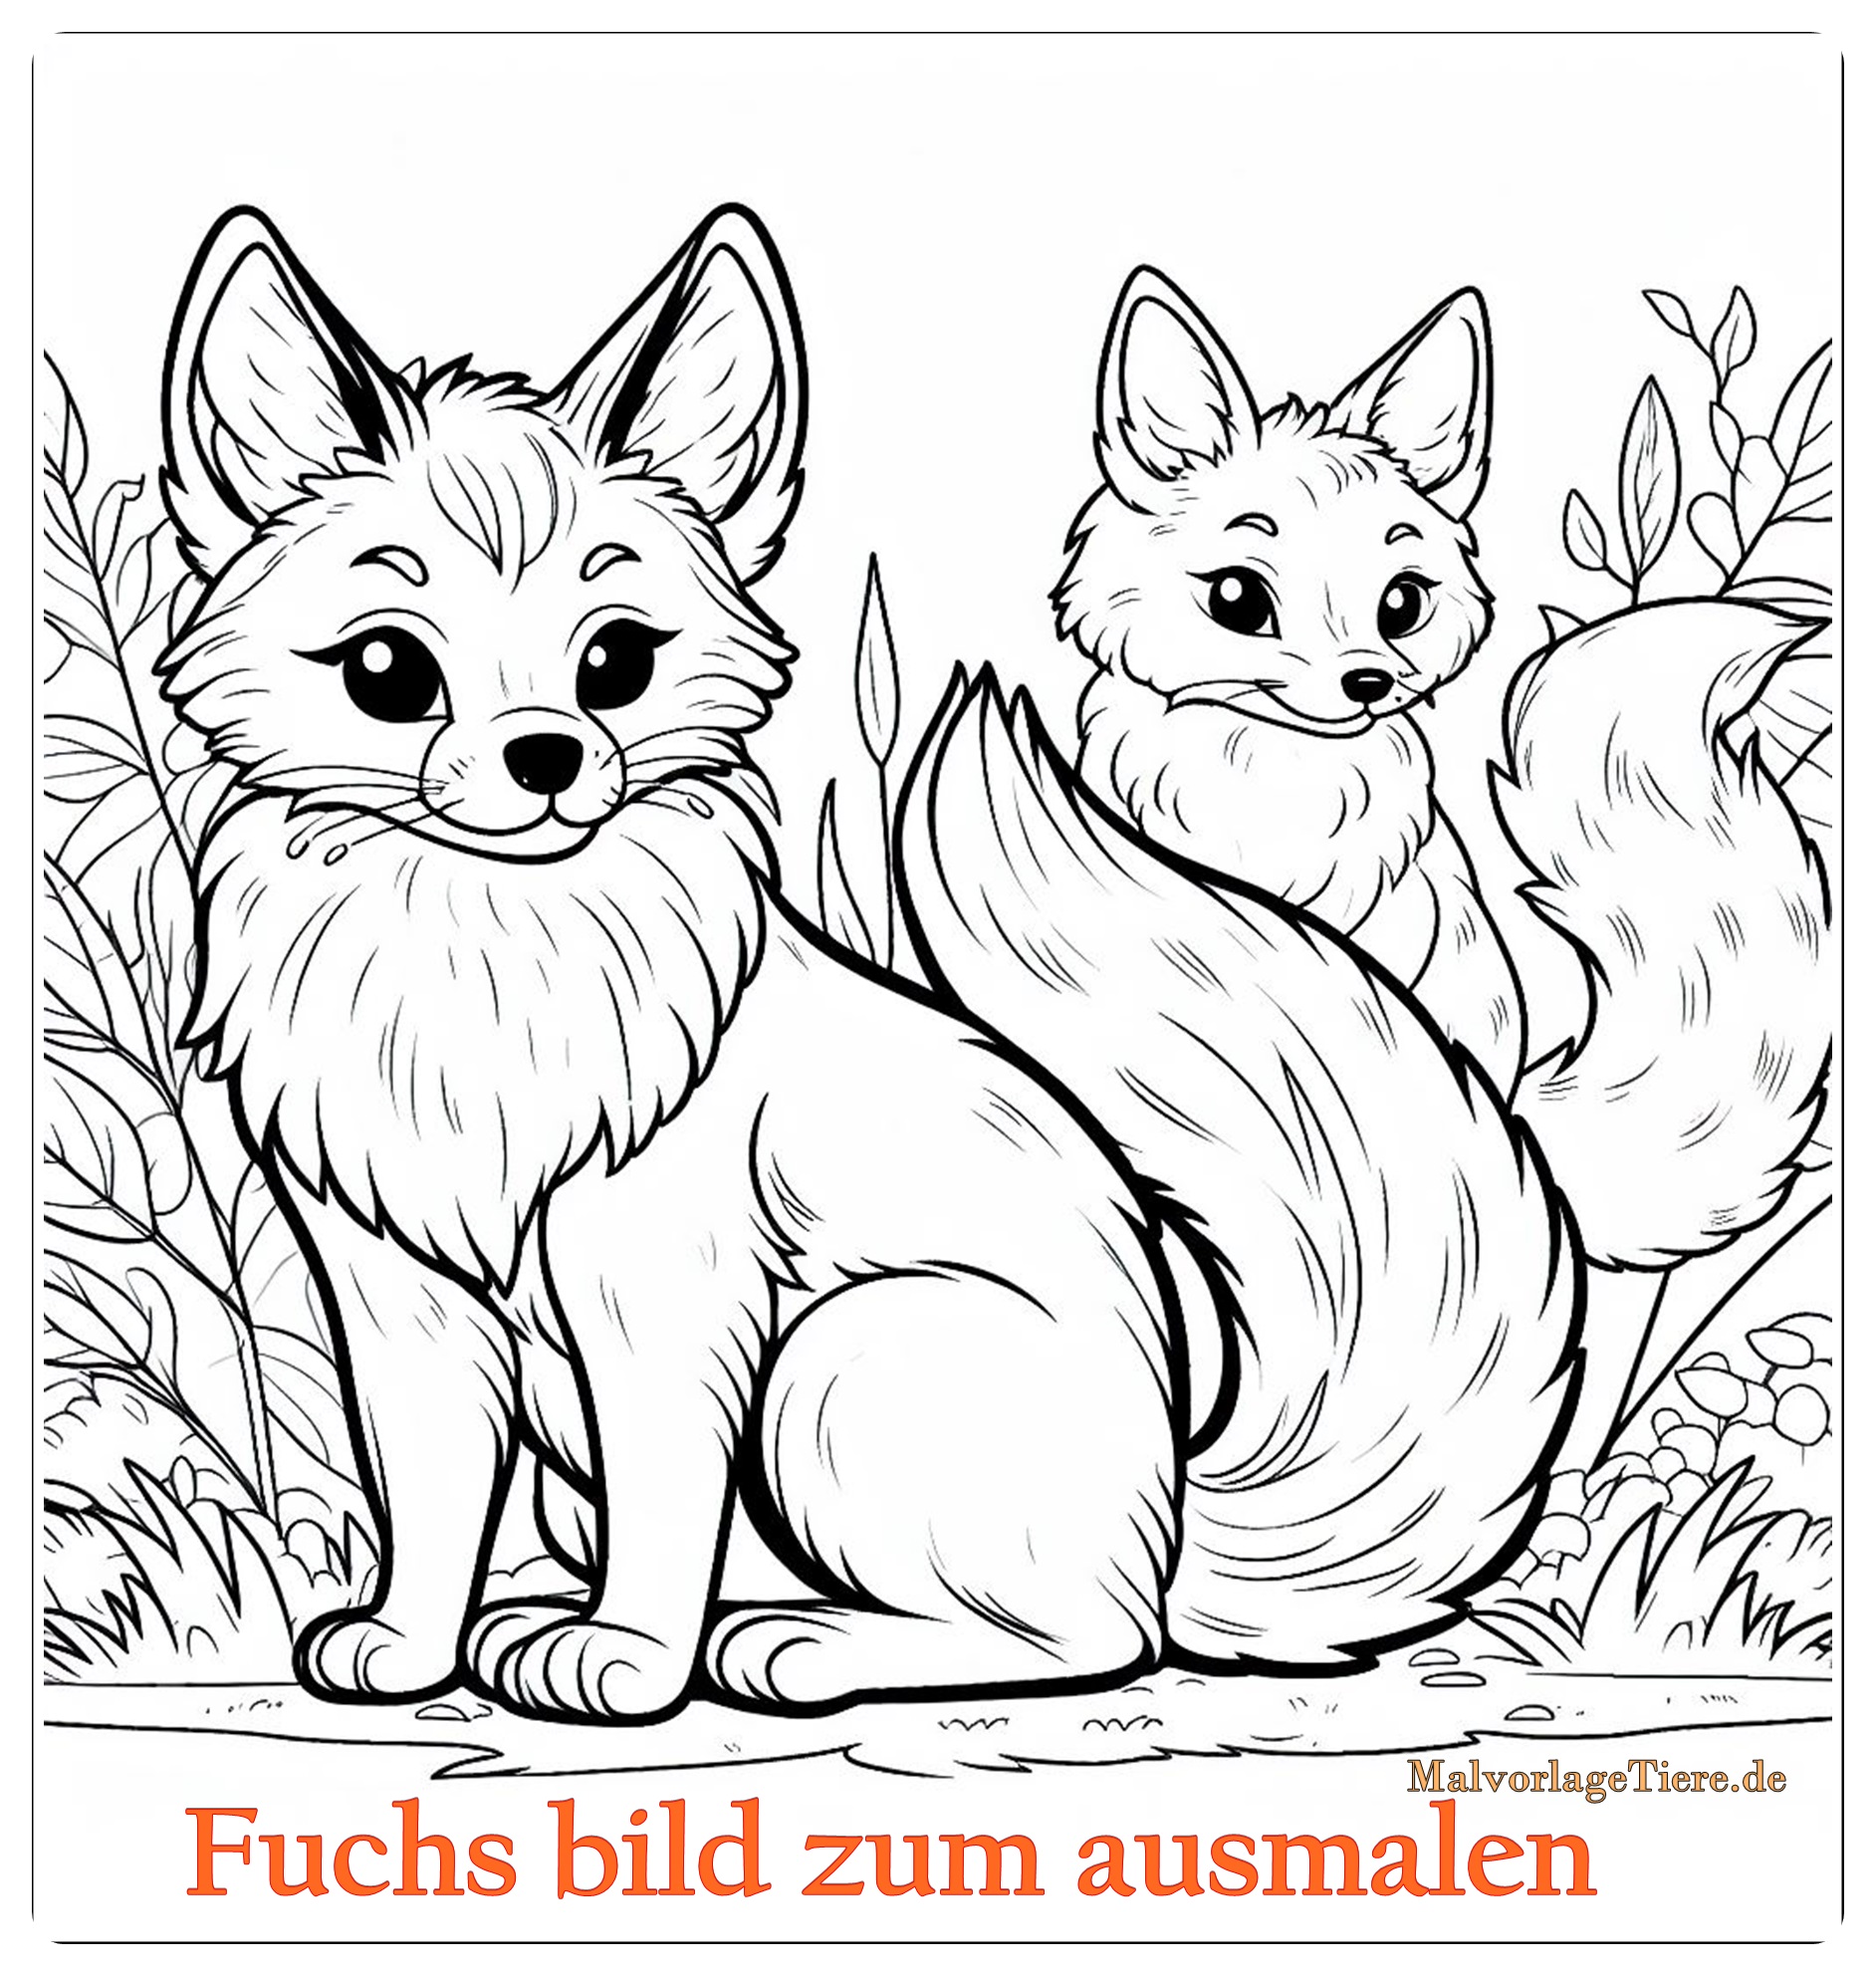 Fuchs bild zum ausmalen 02 by malvorlagetiere.de